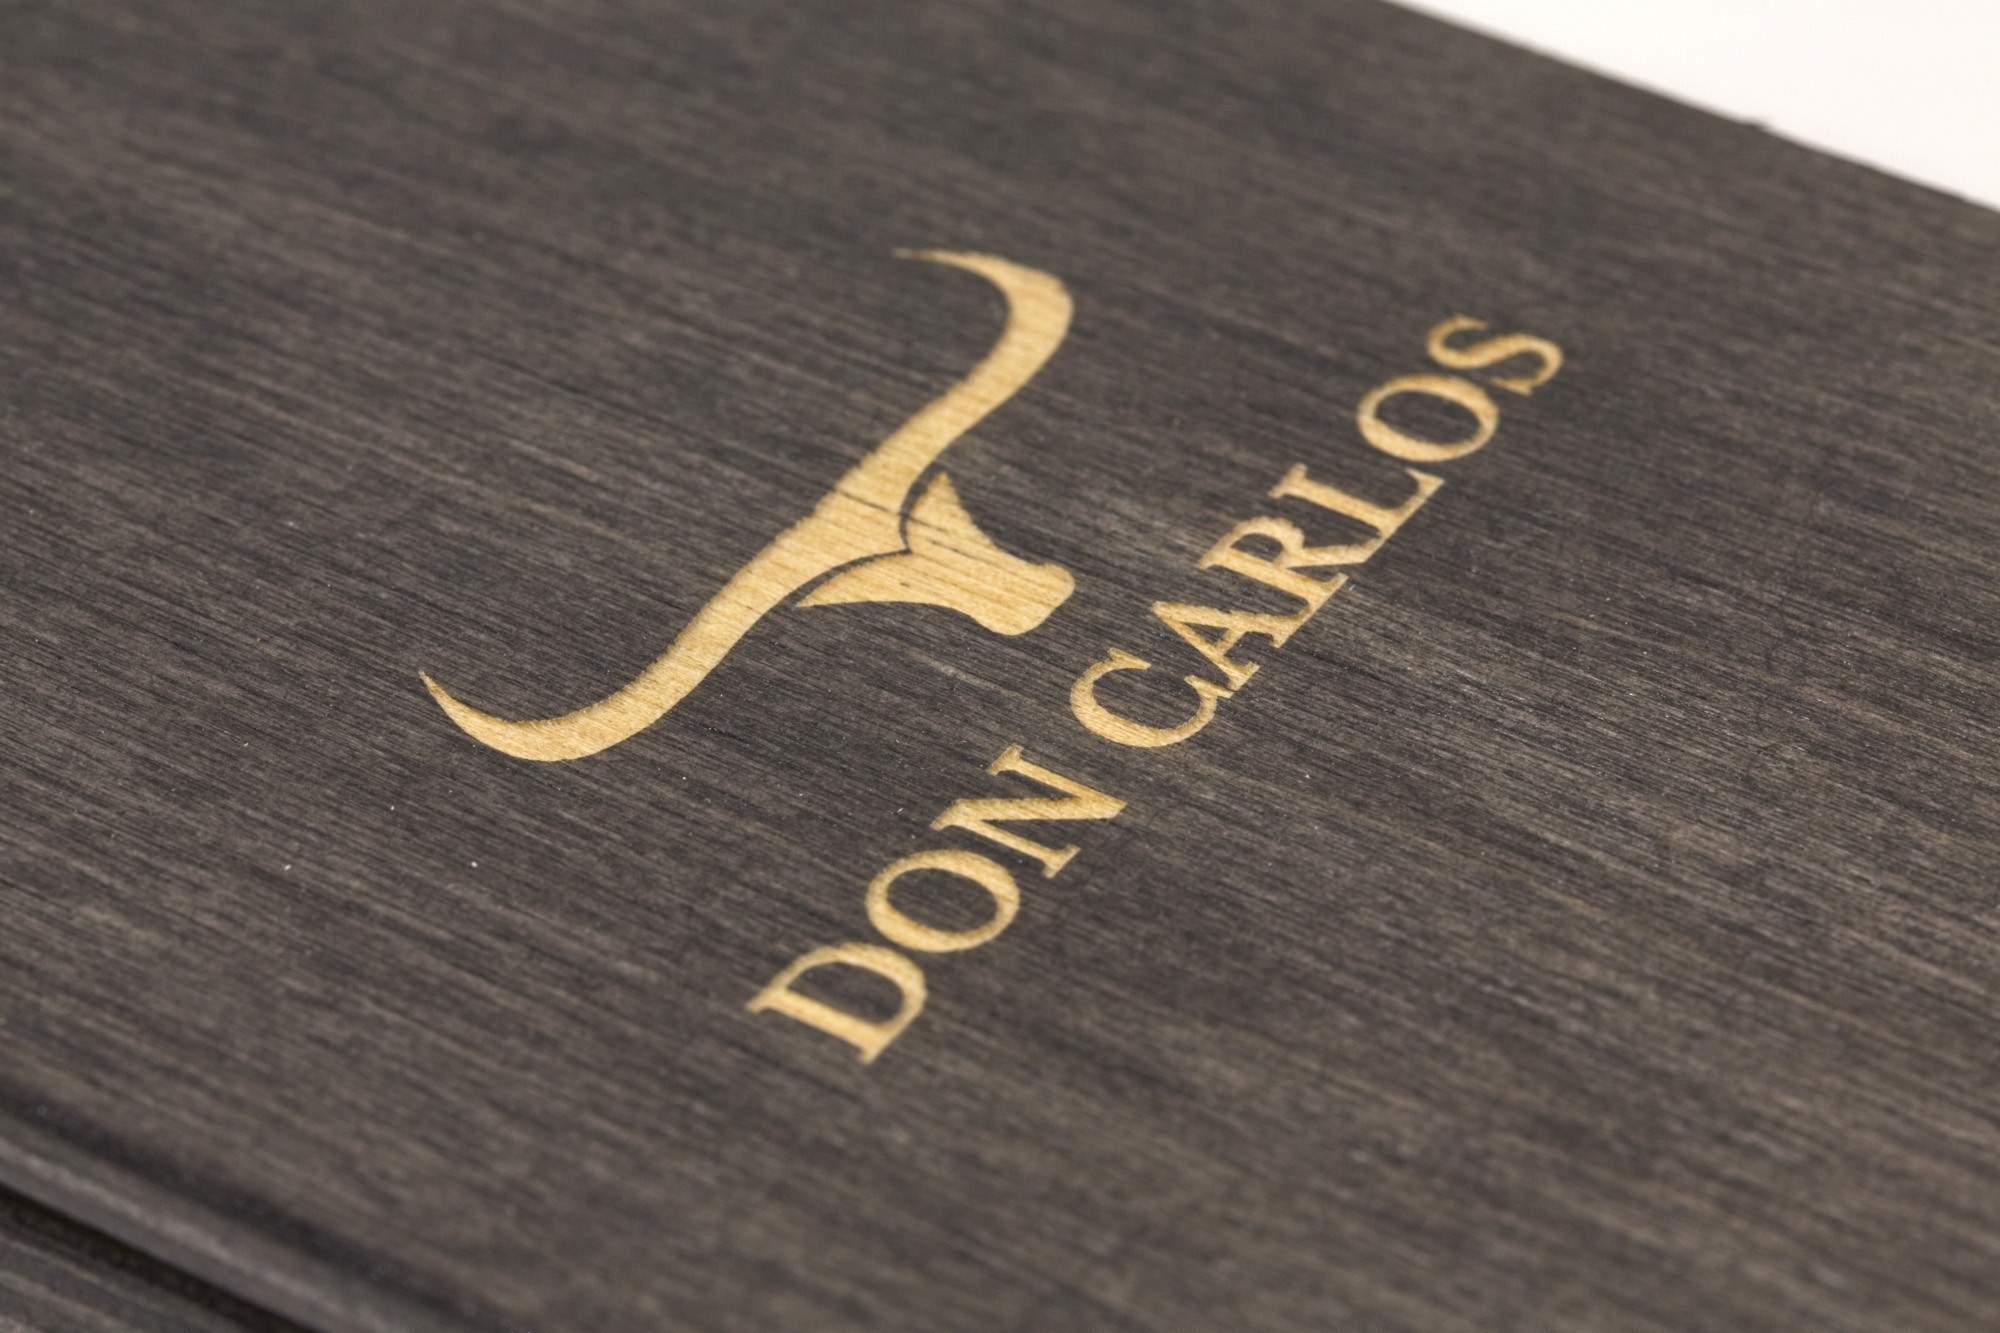 La Cala - Portaconto Don Carlos ristorante